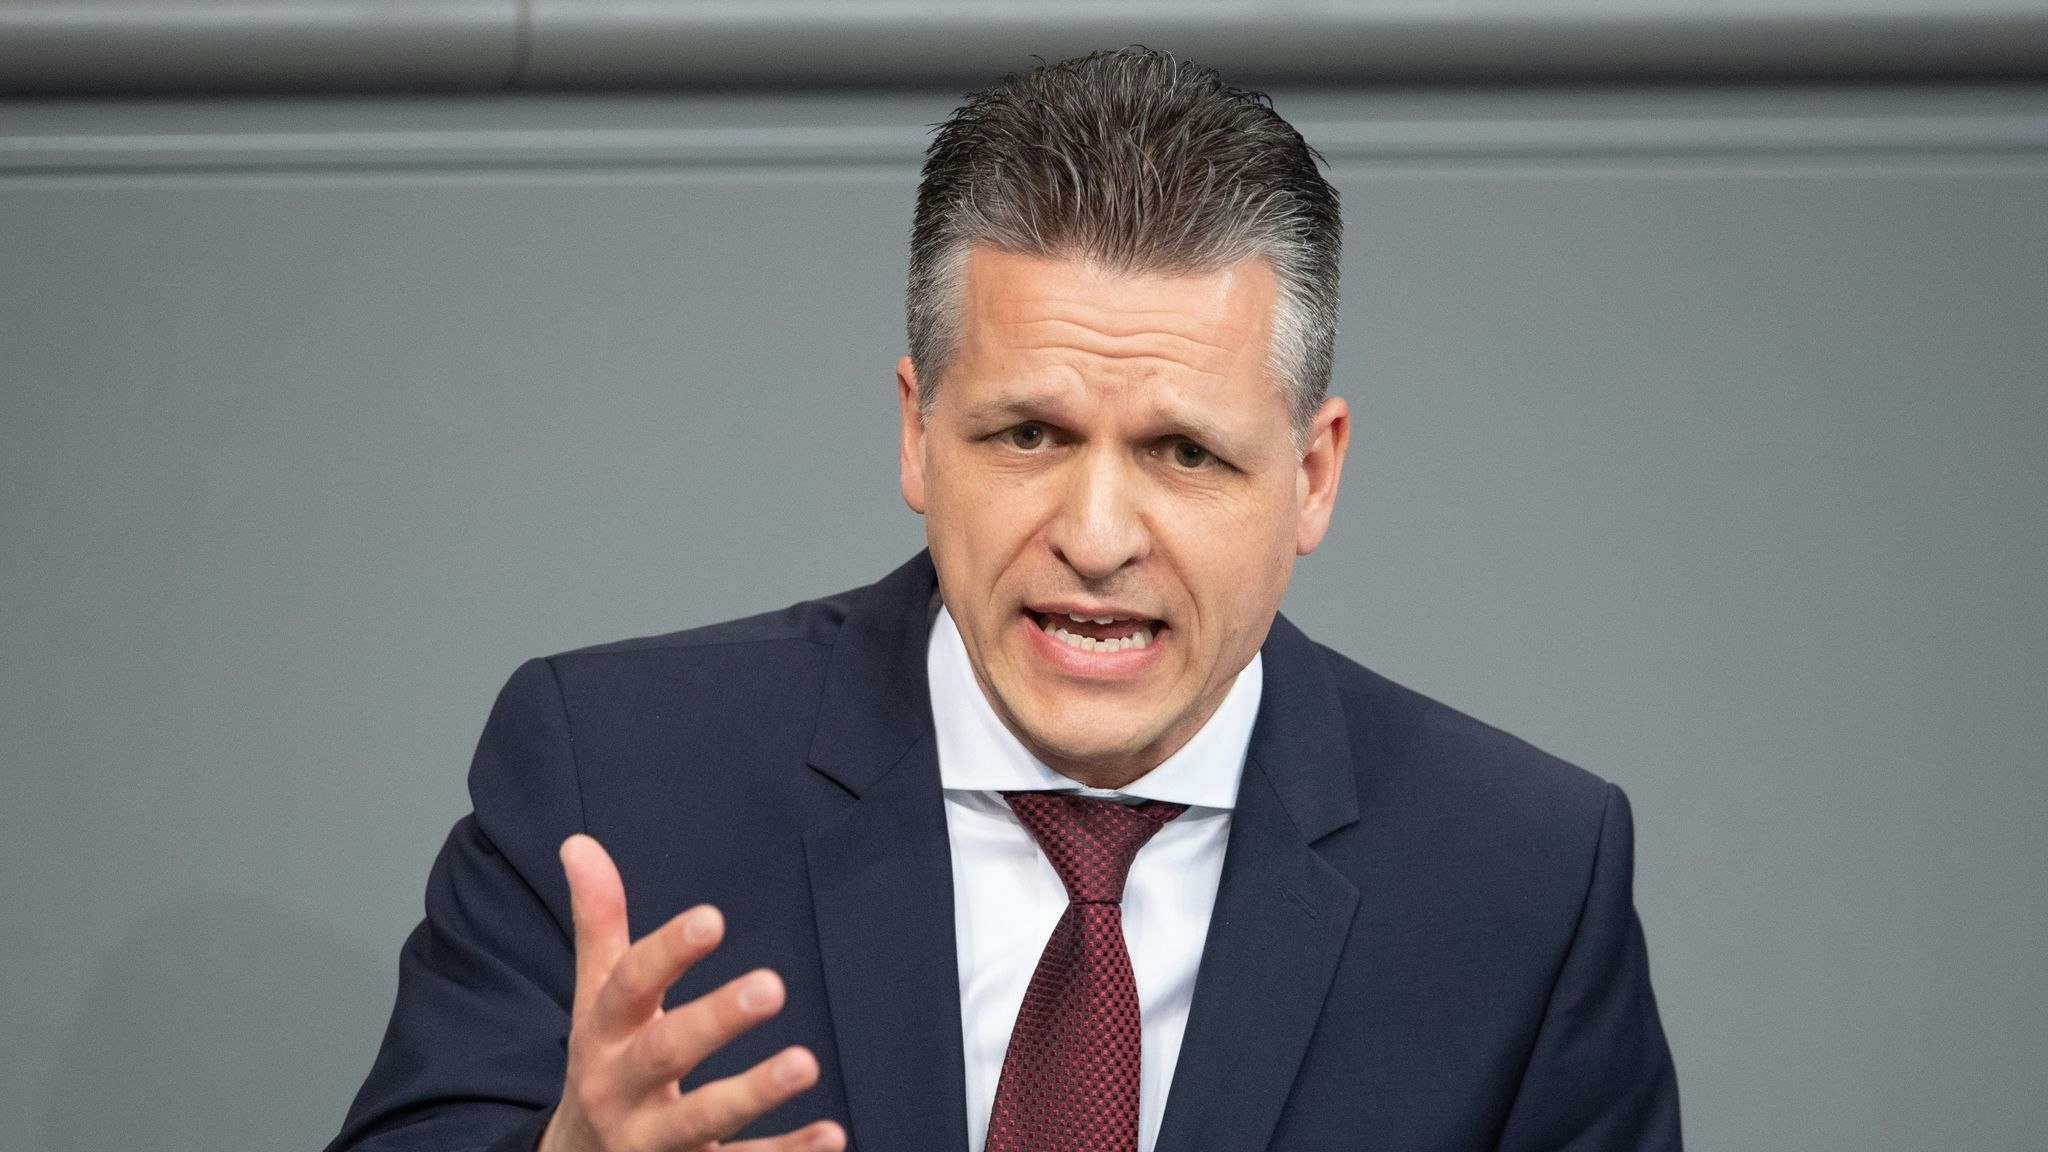 Thorsten Freis (CDU) letzter Vorstoß wurde von den Ampel-Parteien scharf kritisiert. Foto: dpa/Stache